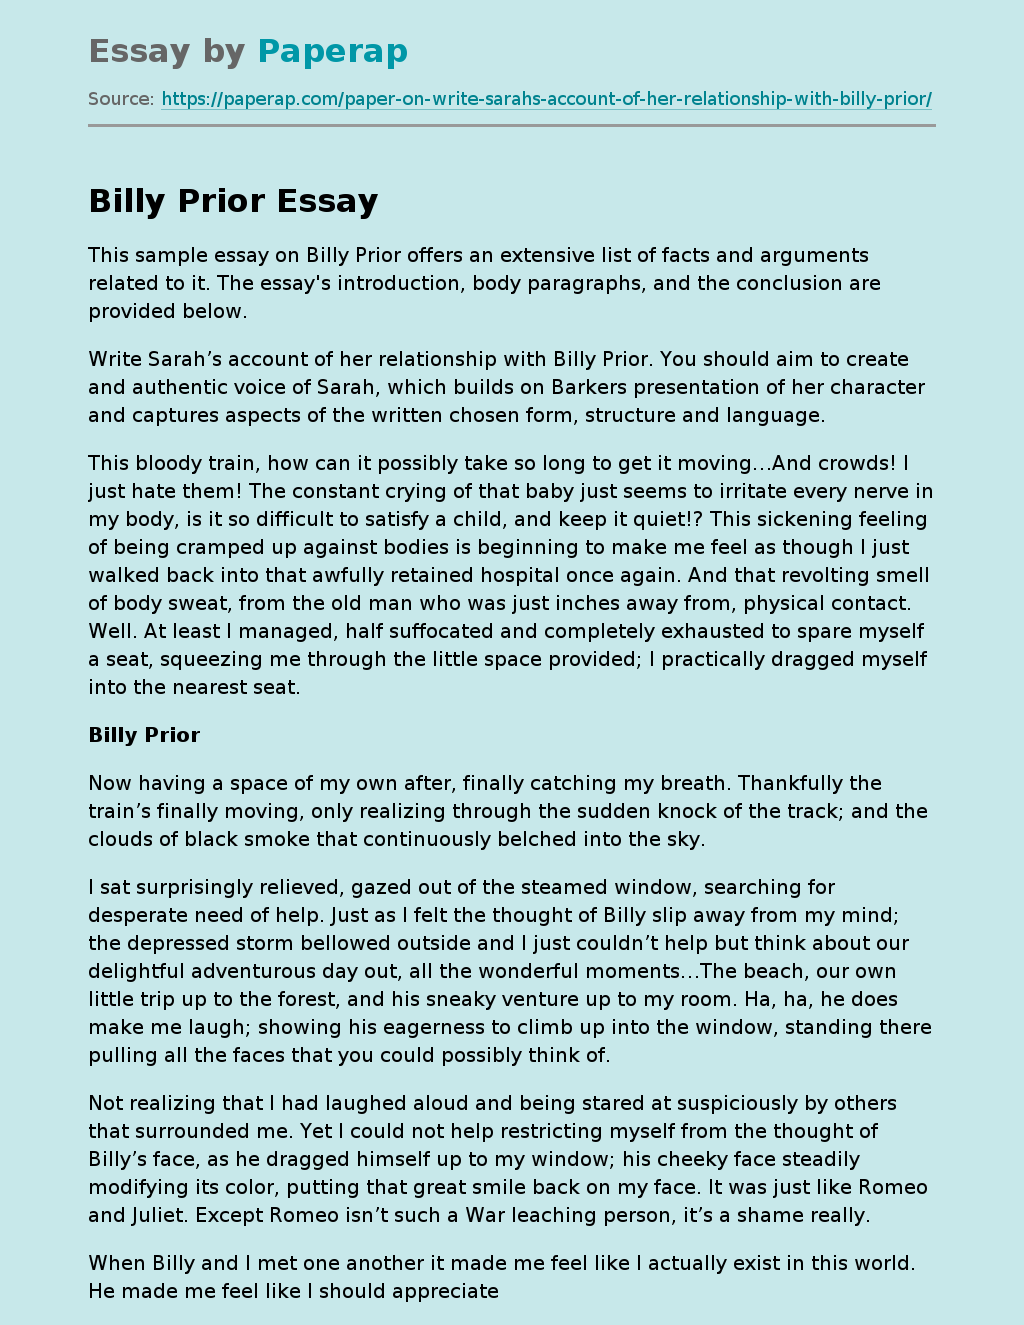 Billy Prior